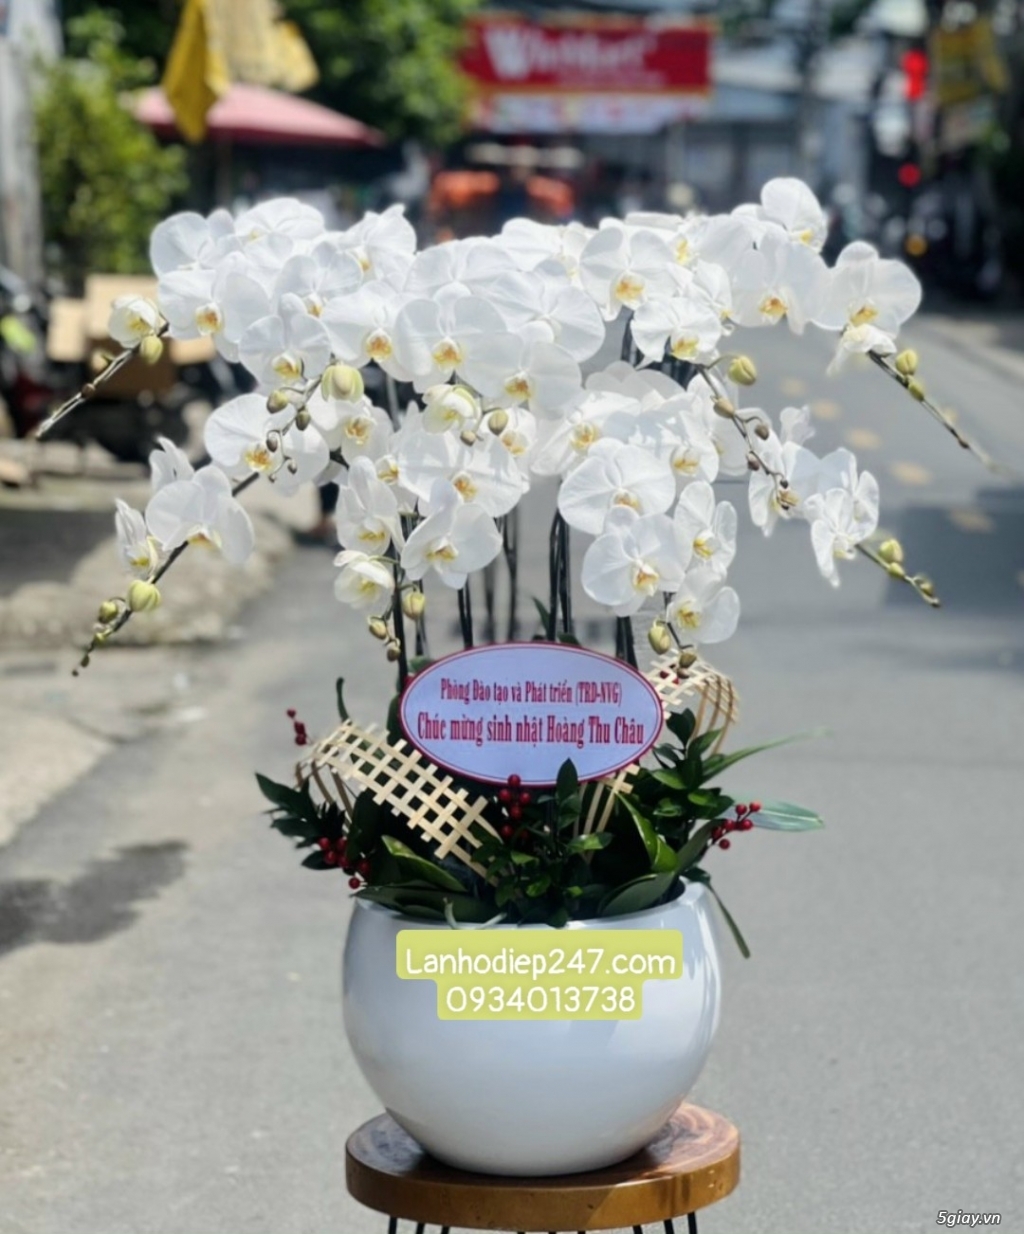 Shop hoa tuoi 24/7 tphcm phục vụ hoa lan hồ điệp uy tín toàn quốc - 17